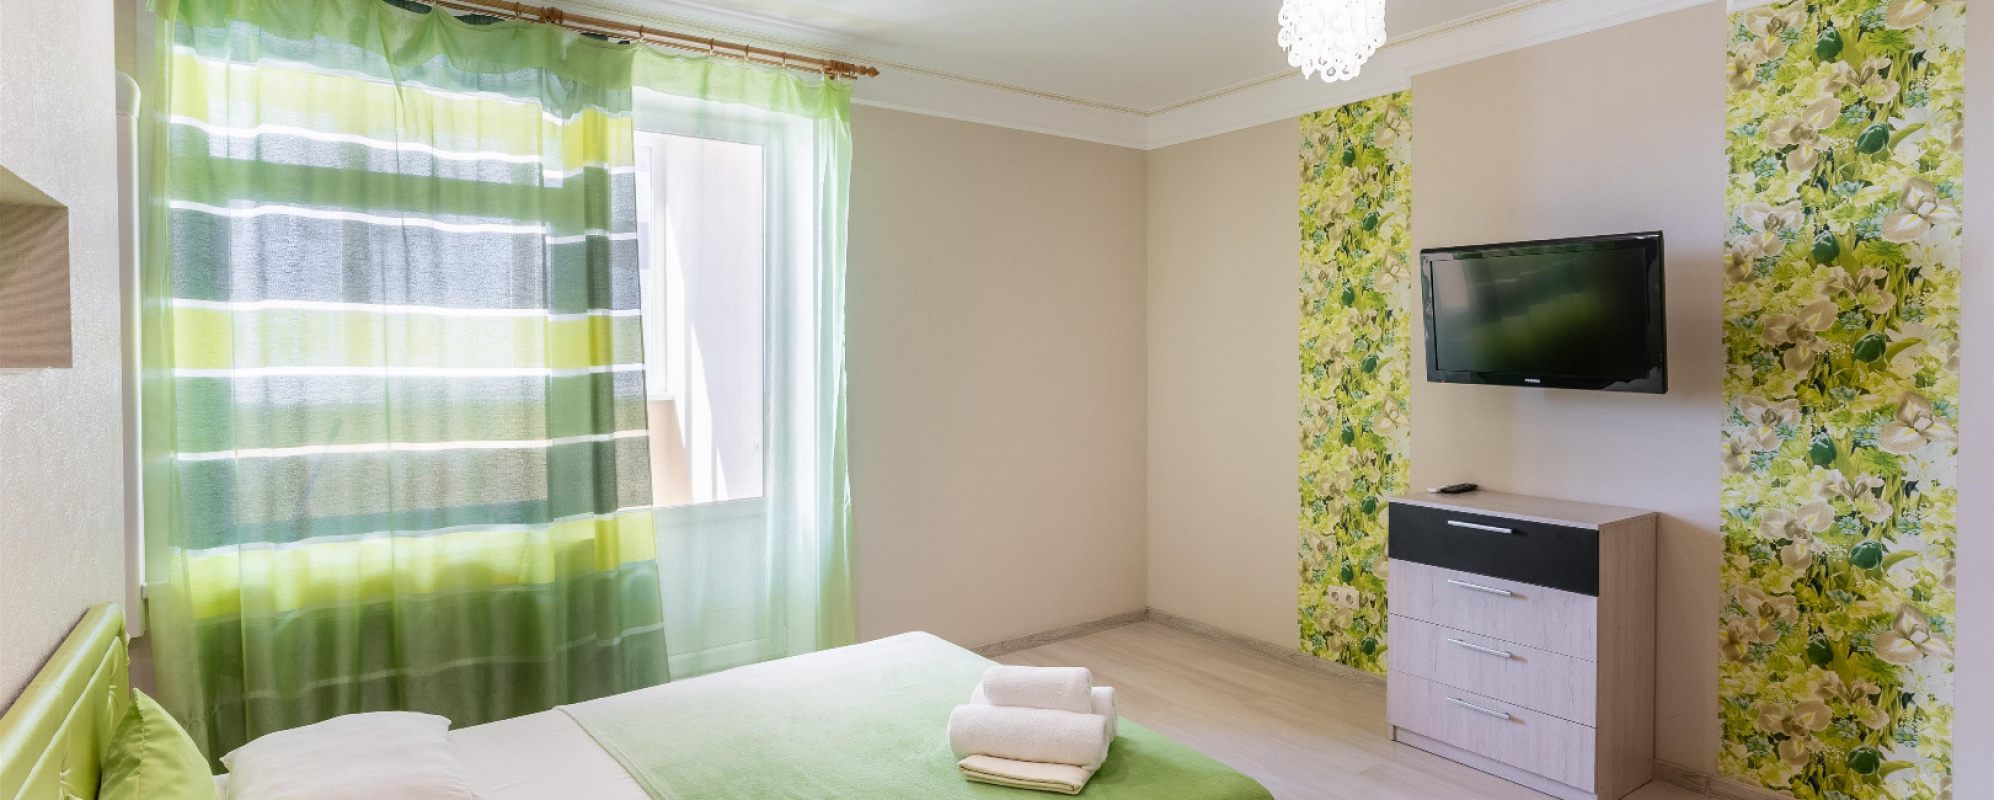 Фотографии квартиры Однокомнатная квартира класса люкс в зеленых тонах